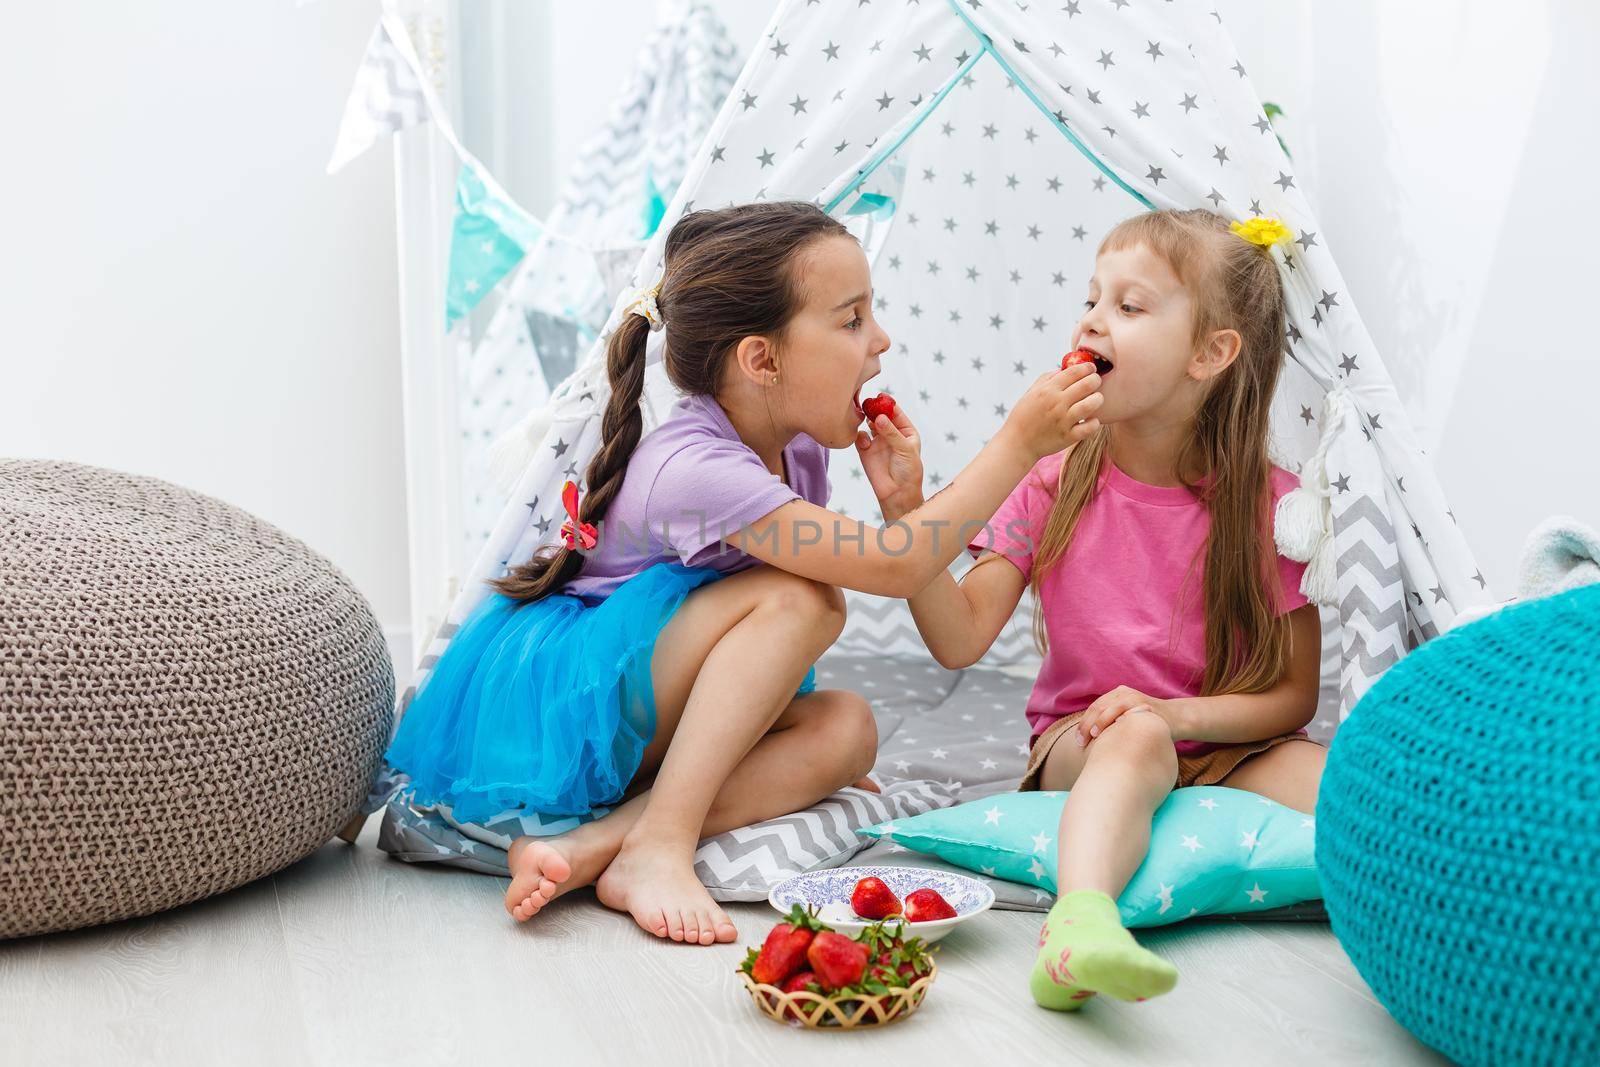 Happy children girl sister eating strawberries